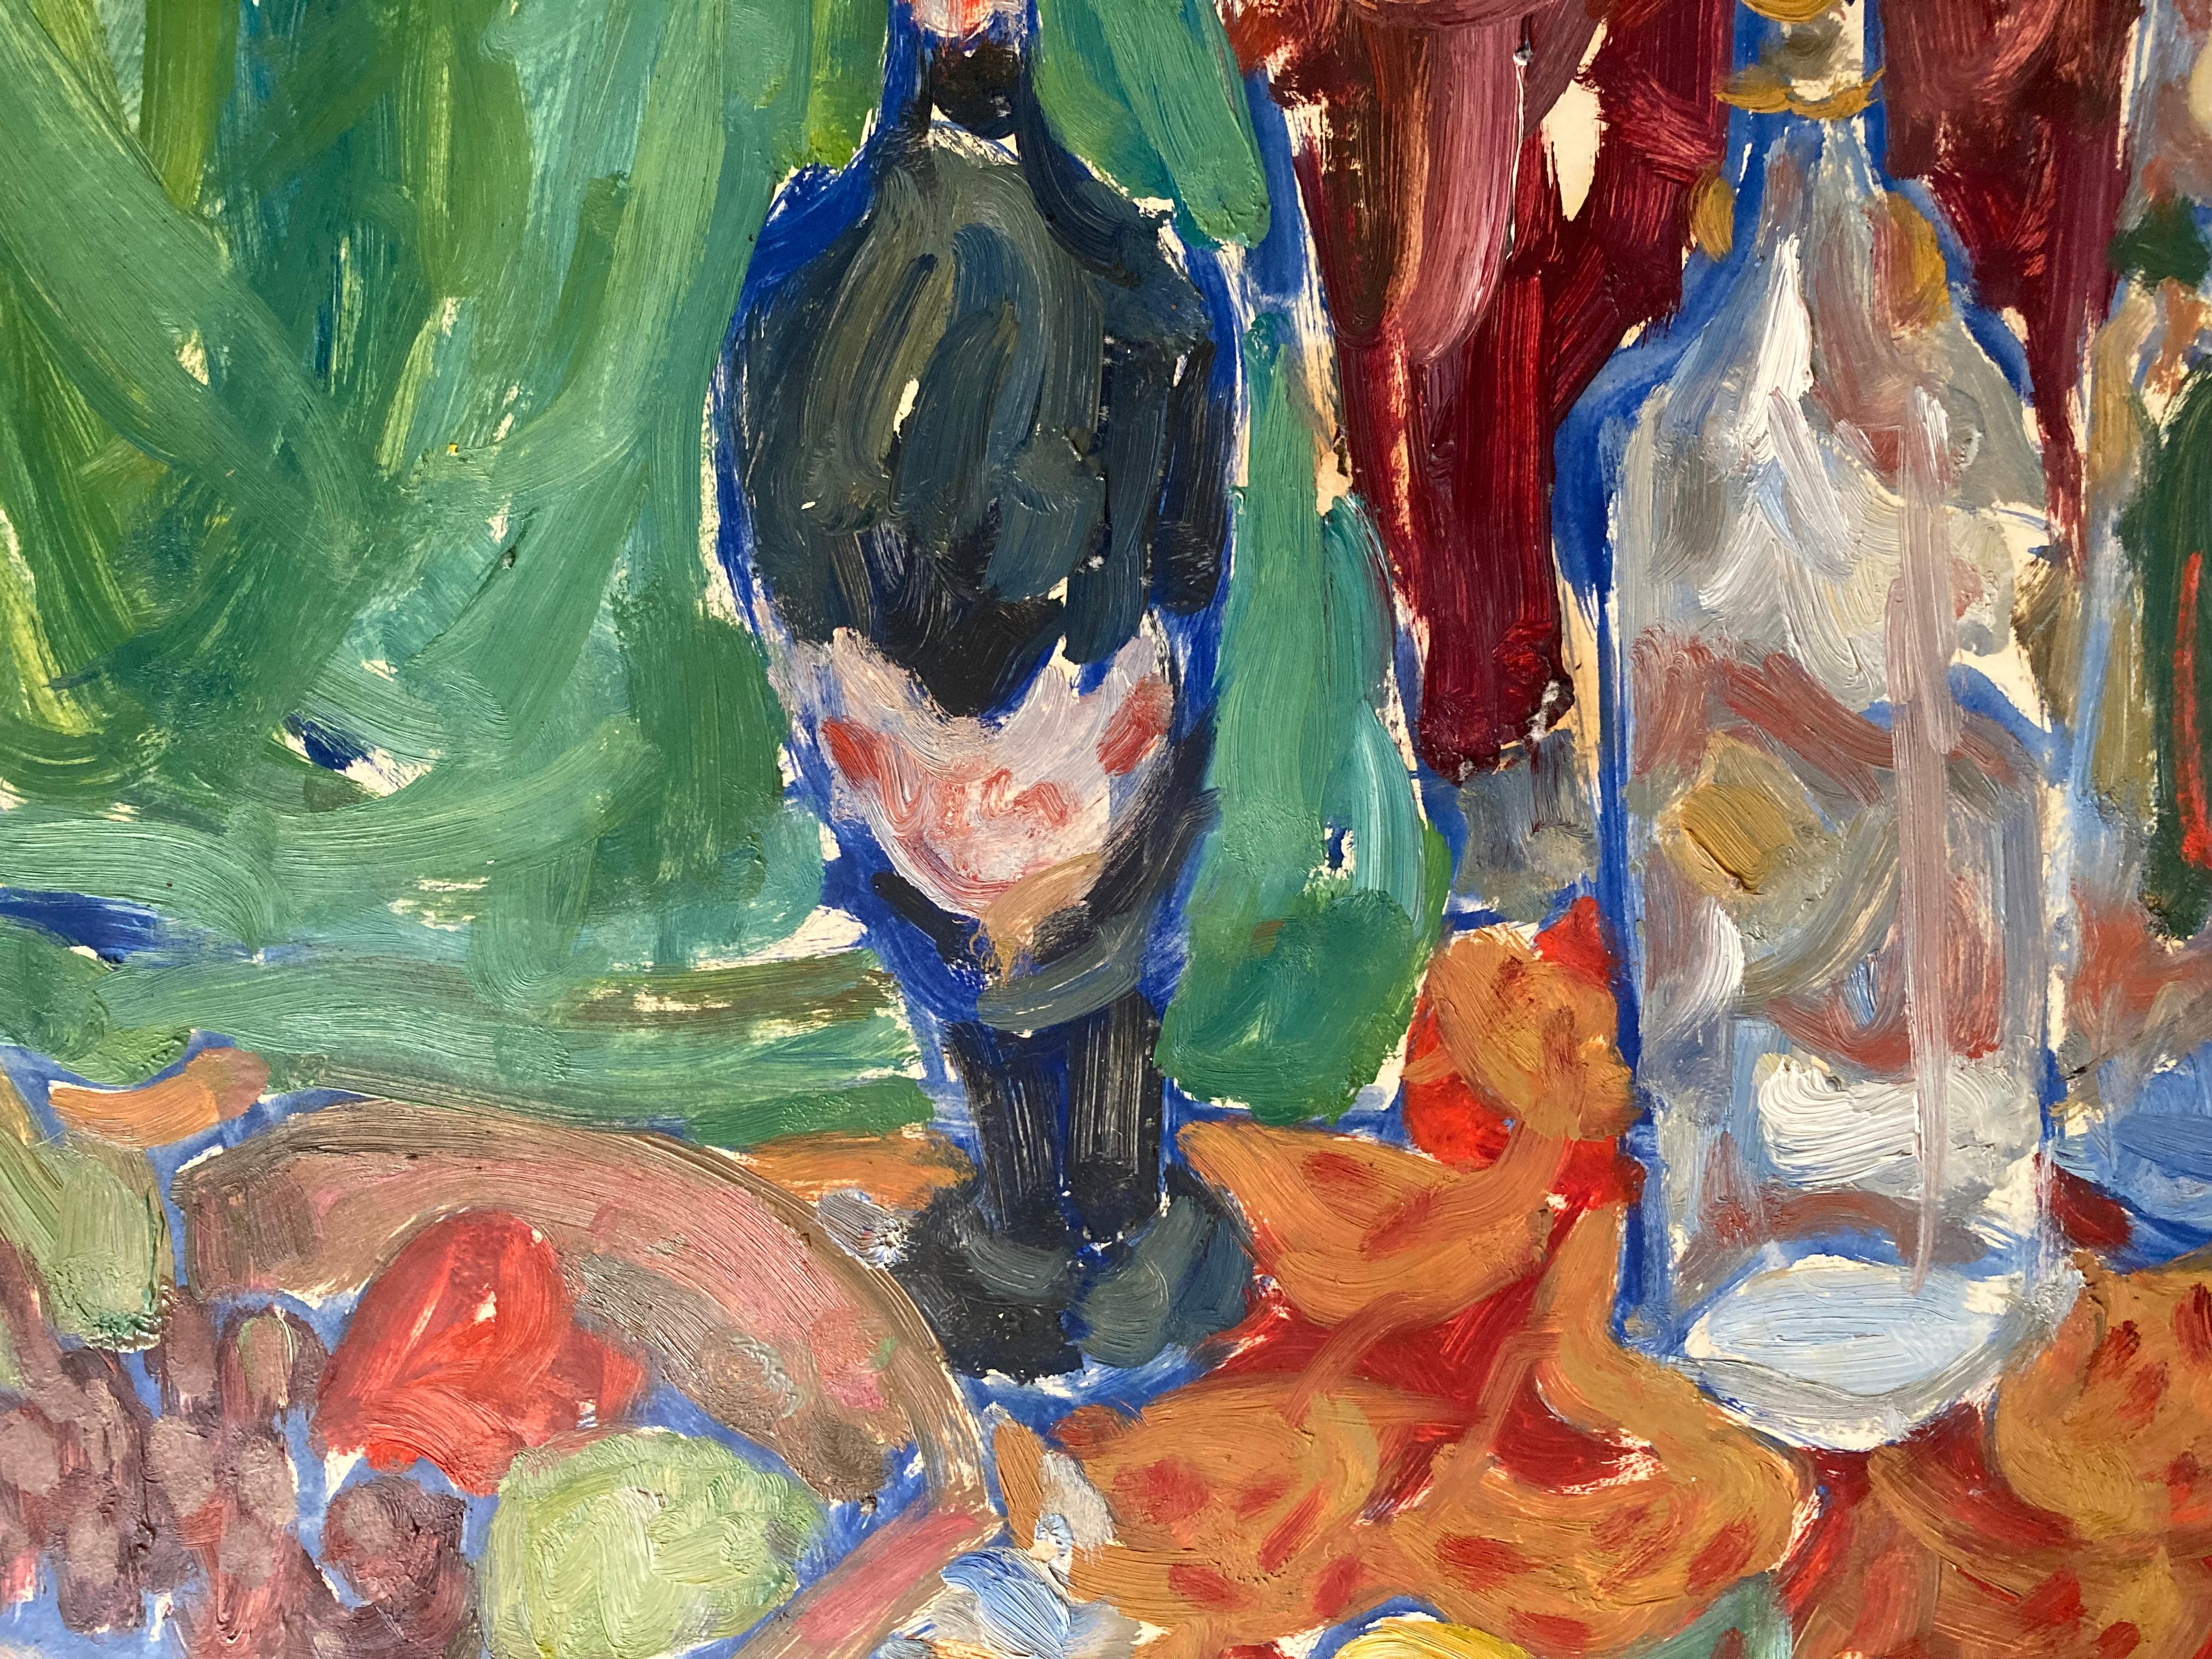 impressionist fruit paintings